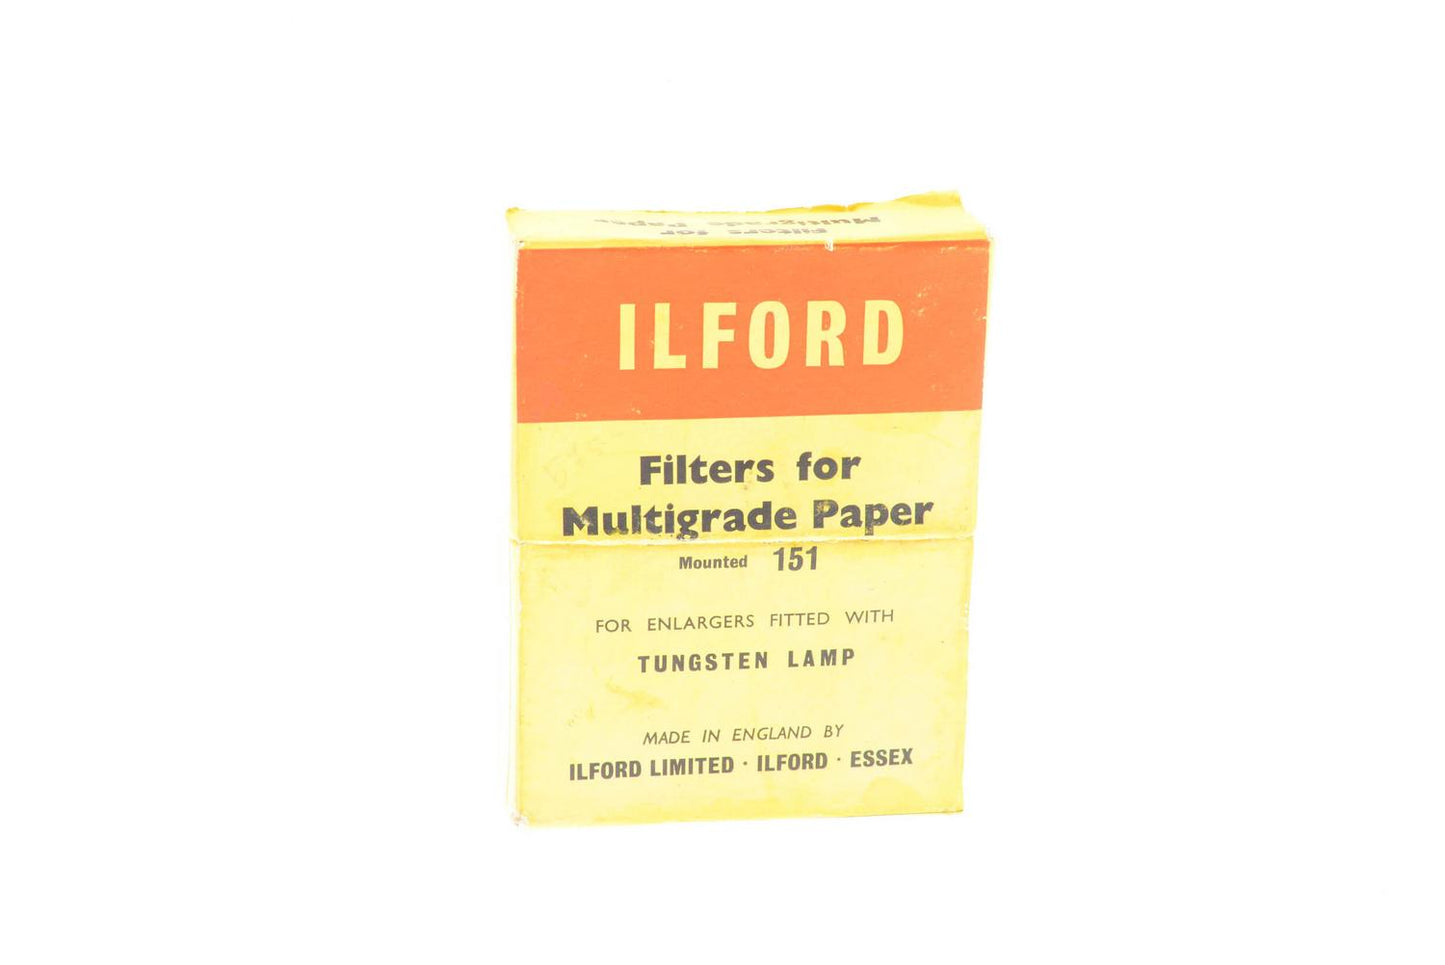 Ilford Filters for Multigrade Paper - Accessory